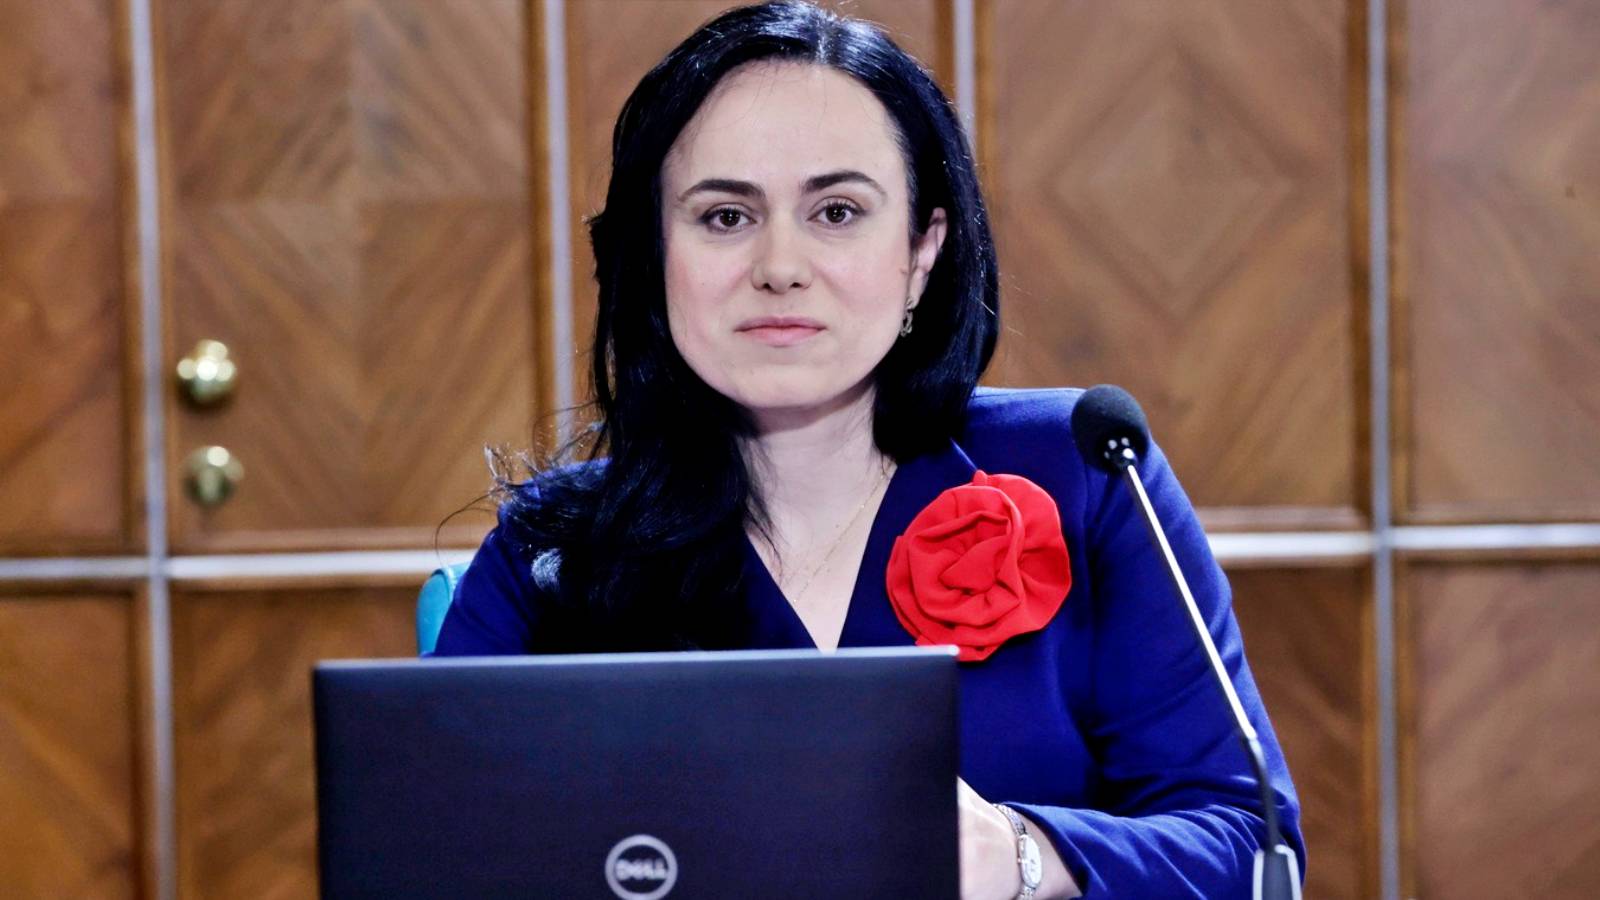 Simona-Bucura Oprescu Messages de DERNIER MOMENT au Ministre du Travail de toute la Roumanie